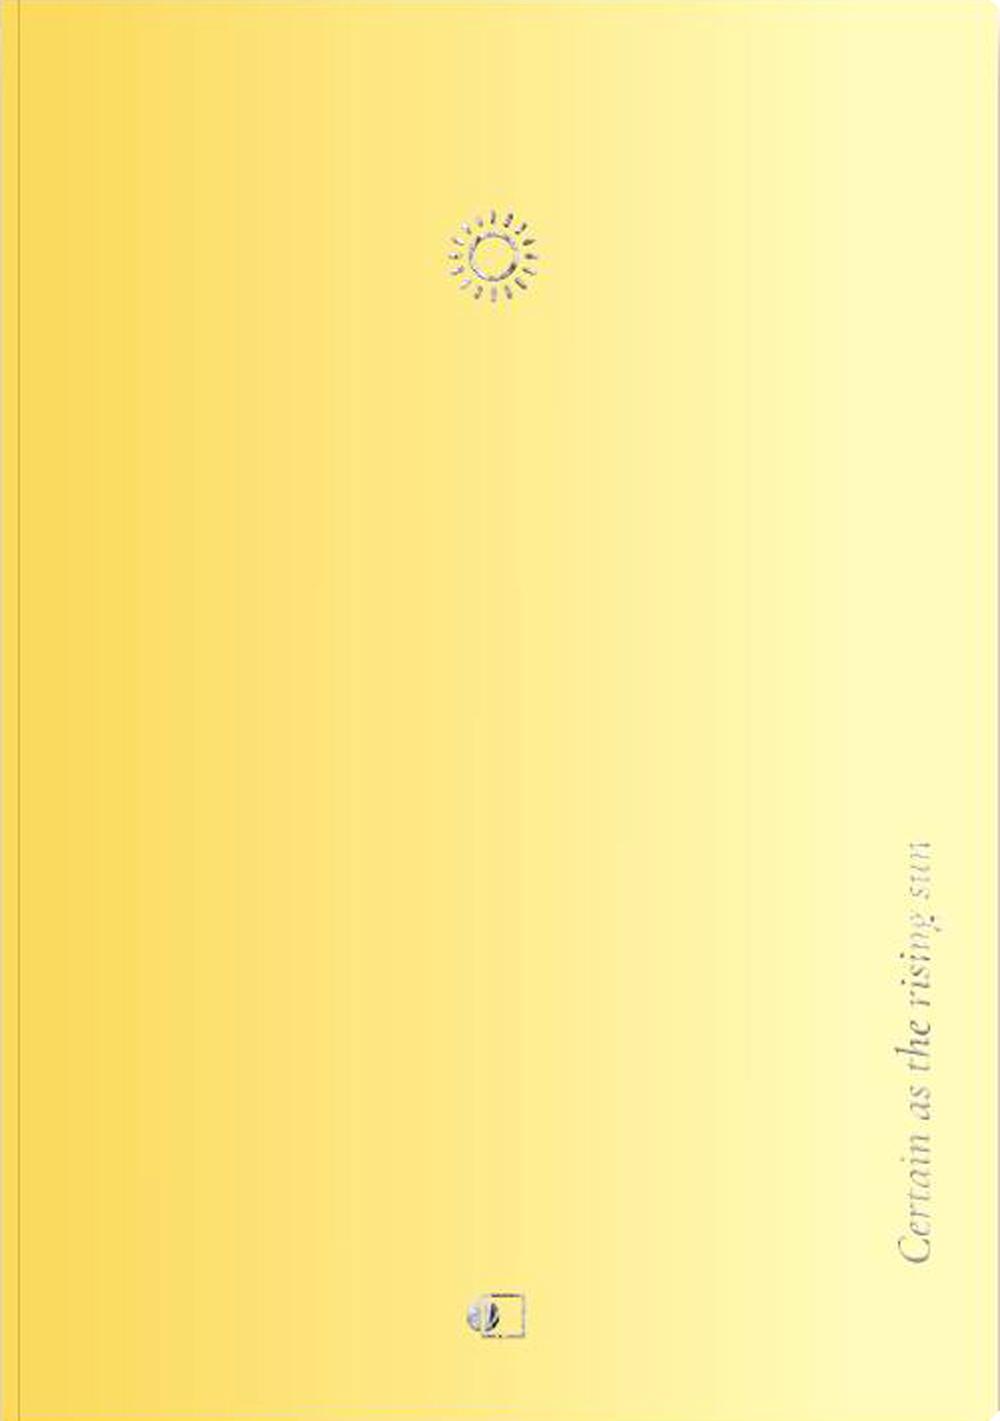 Блокнот АртПринт Серия Пастельный градиент. Желтый / Pastel gradient yellow А5 128 стр.